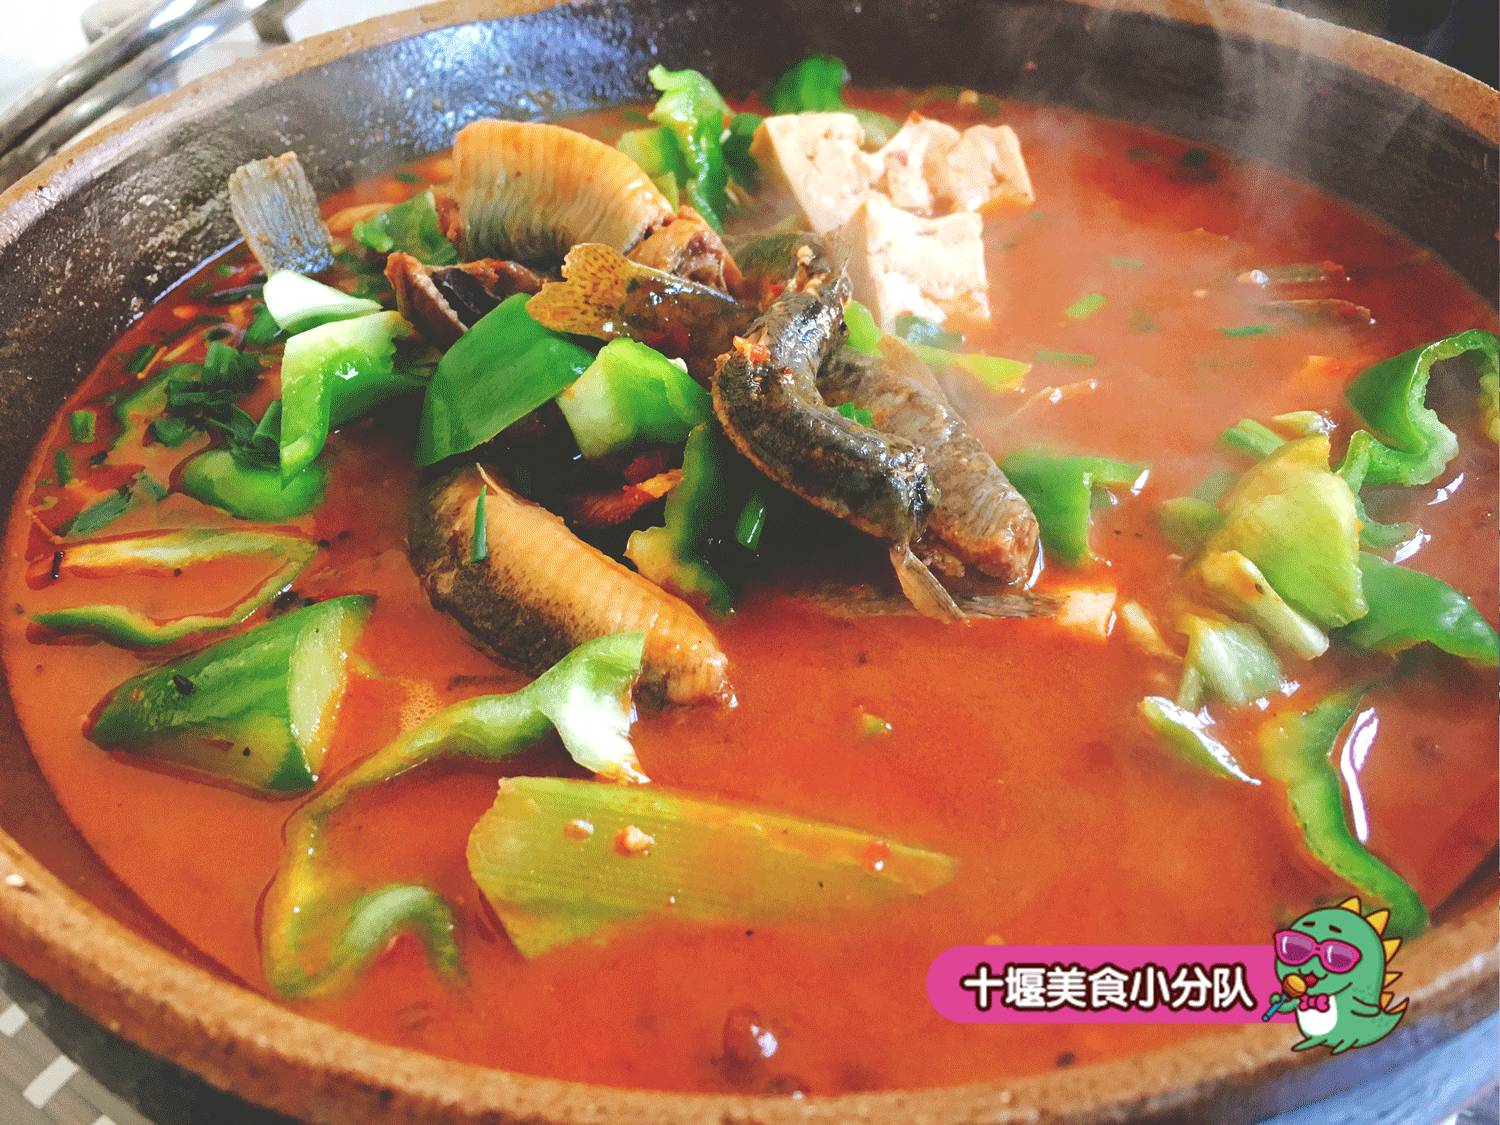 一般吃火锅的时候,涮鳝鱼片就可以提鲜,这一斤鳝鱼煮进来,锅可不是